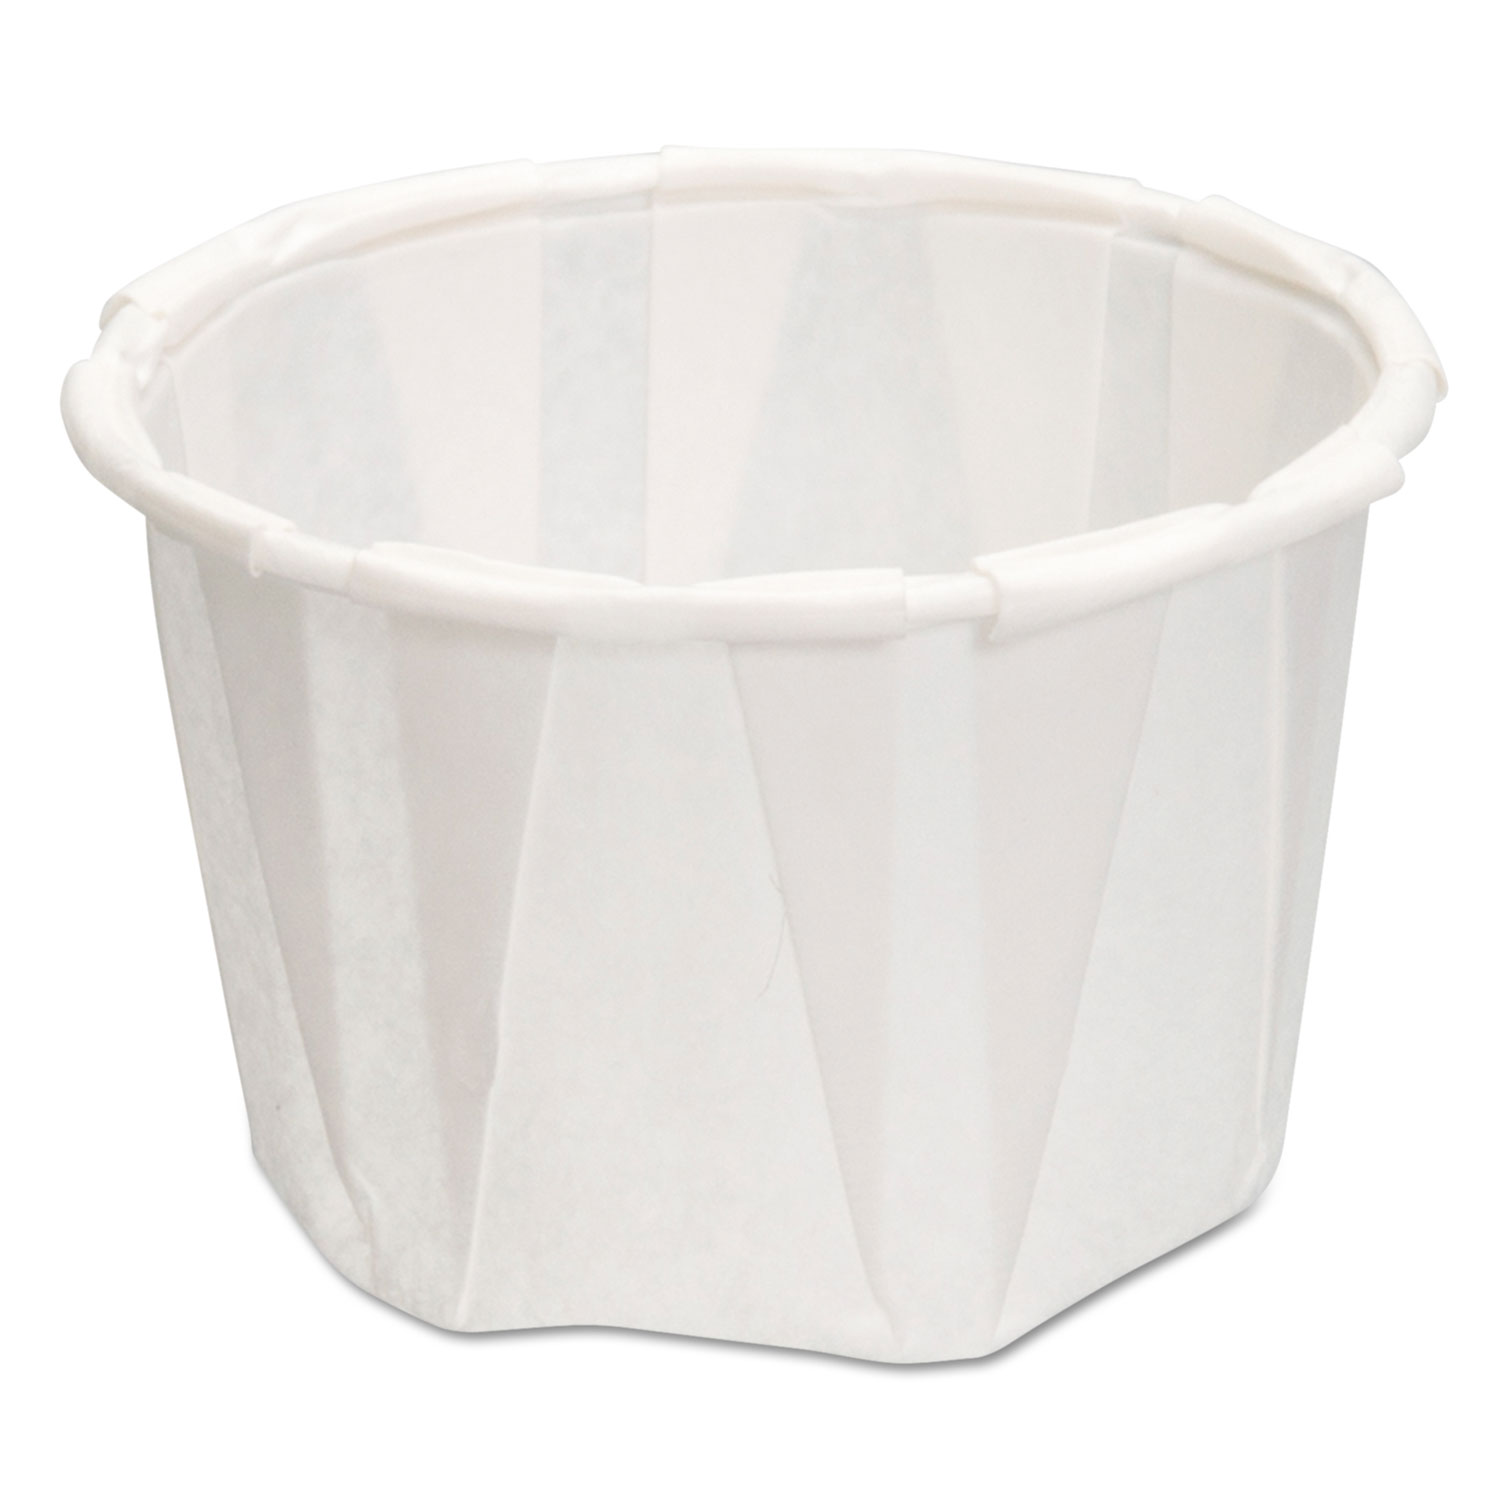  Genpak F125--- Paper Portion Cups, 1.25 oz., White, 250/Bag, 20 Bags/Carton (GNPF125) 